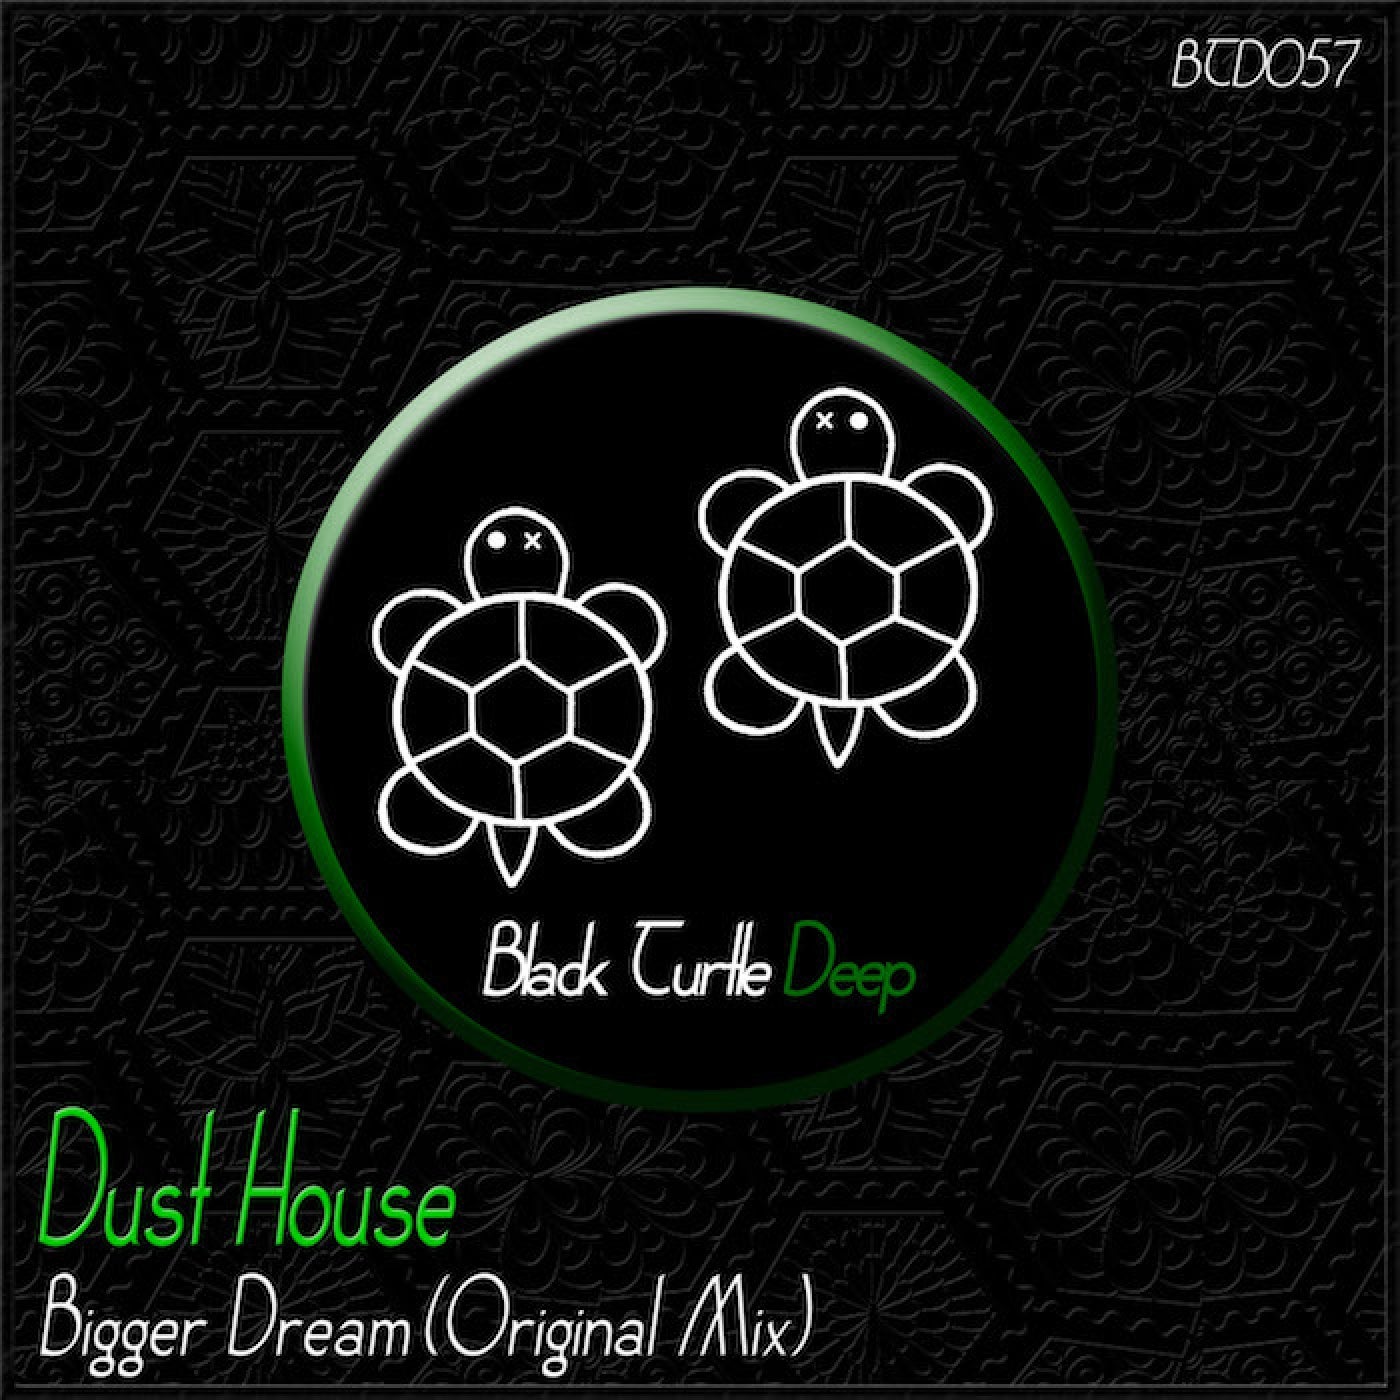 Bigger Dream (Original Mix)